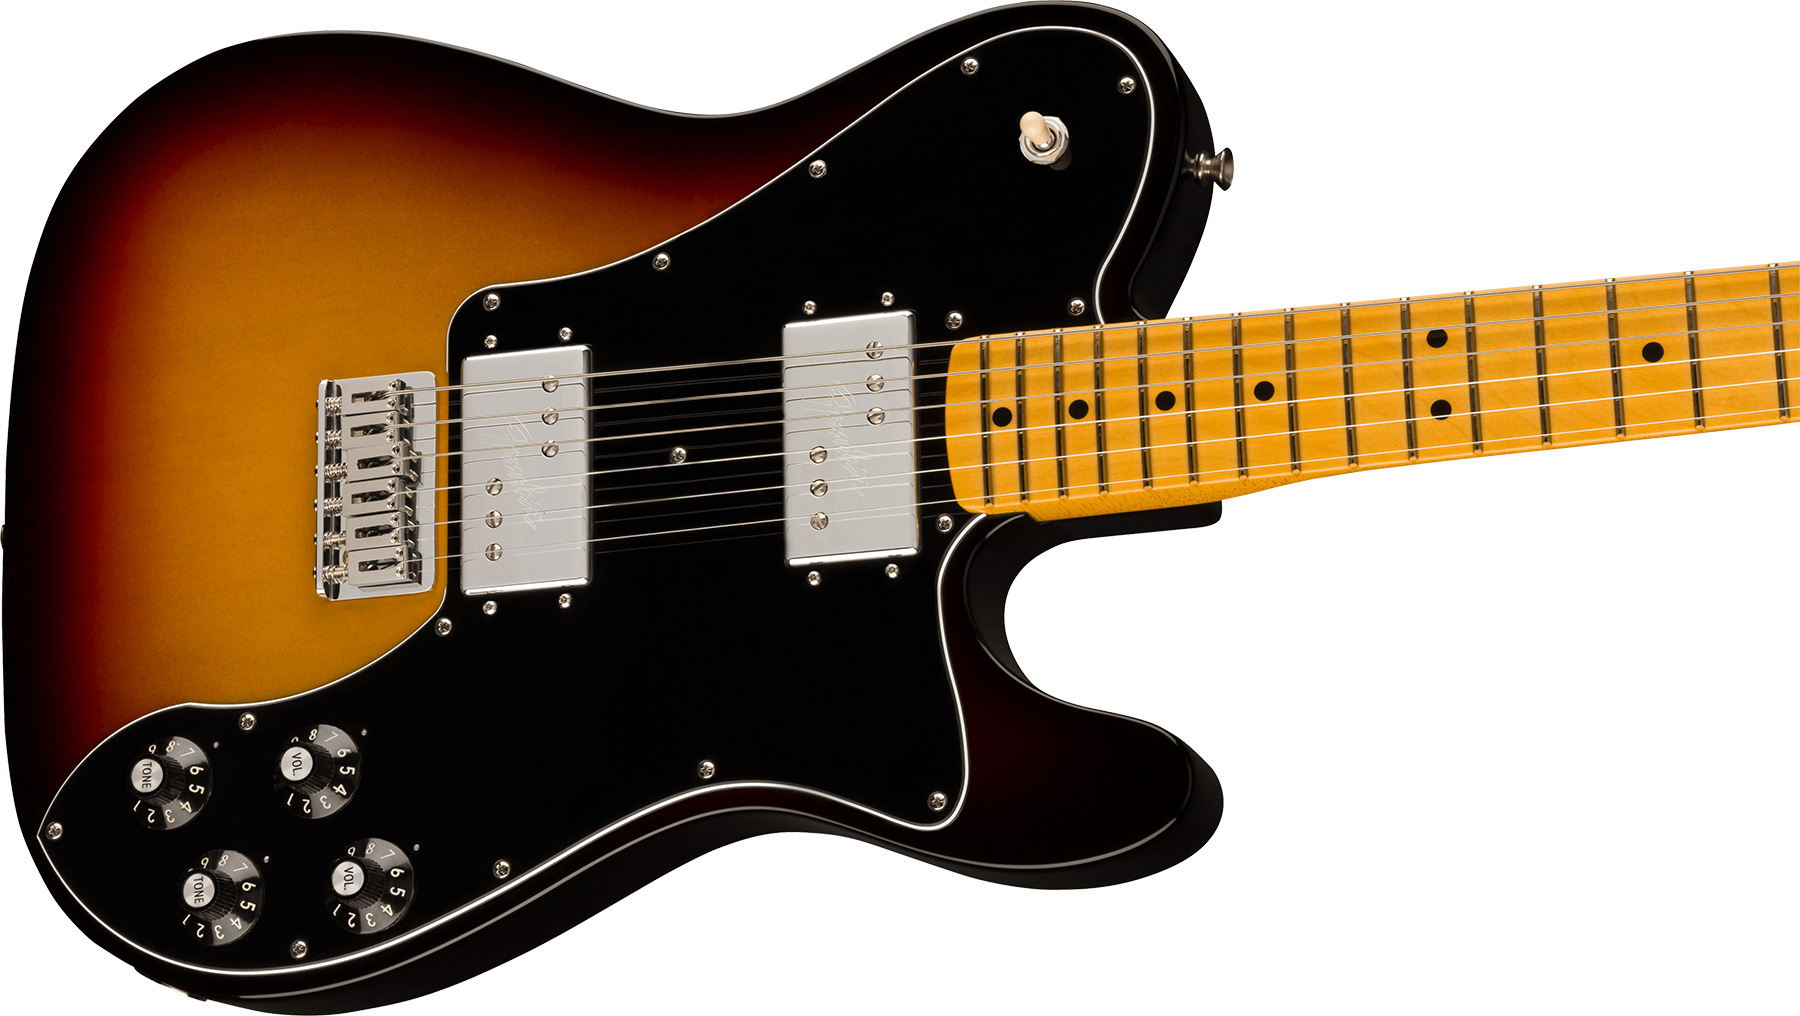 Fender Tele Deluxe 1975 American Vintage Ii Usa 2h Ht Mn - 3-color Sunburst - Tel shape electric guitar - Variation 2